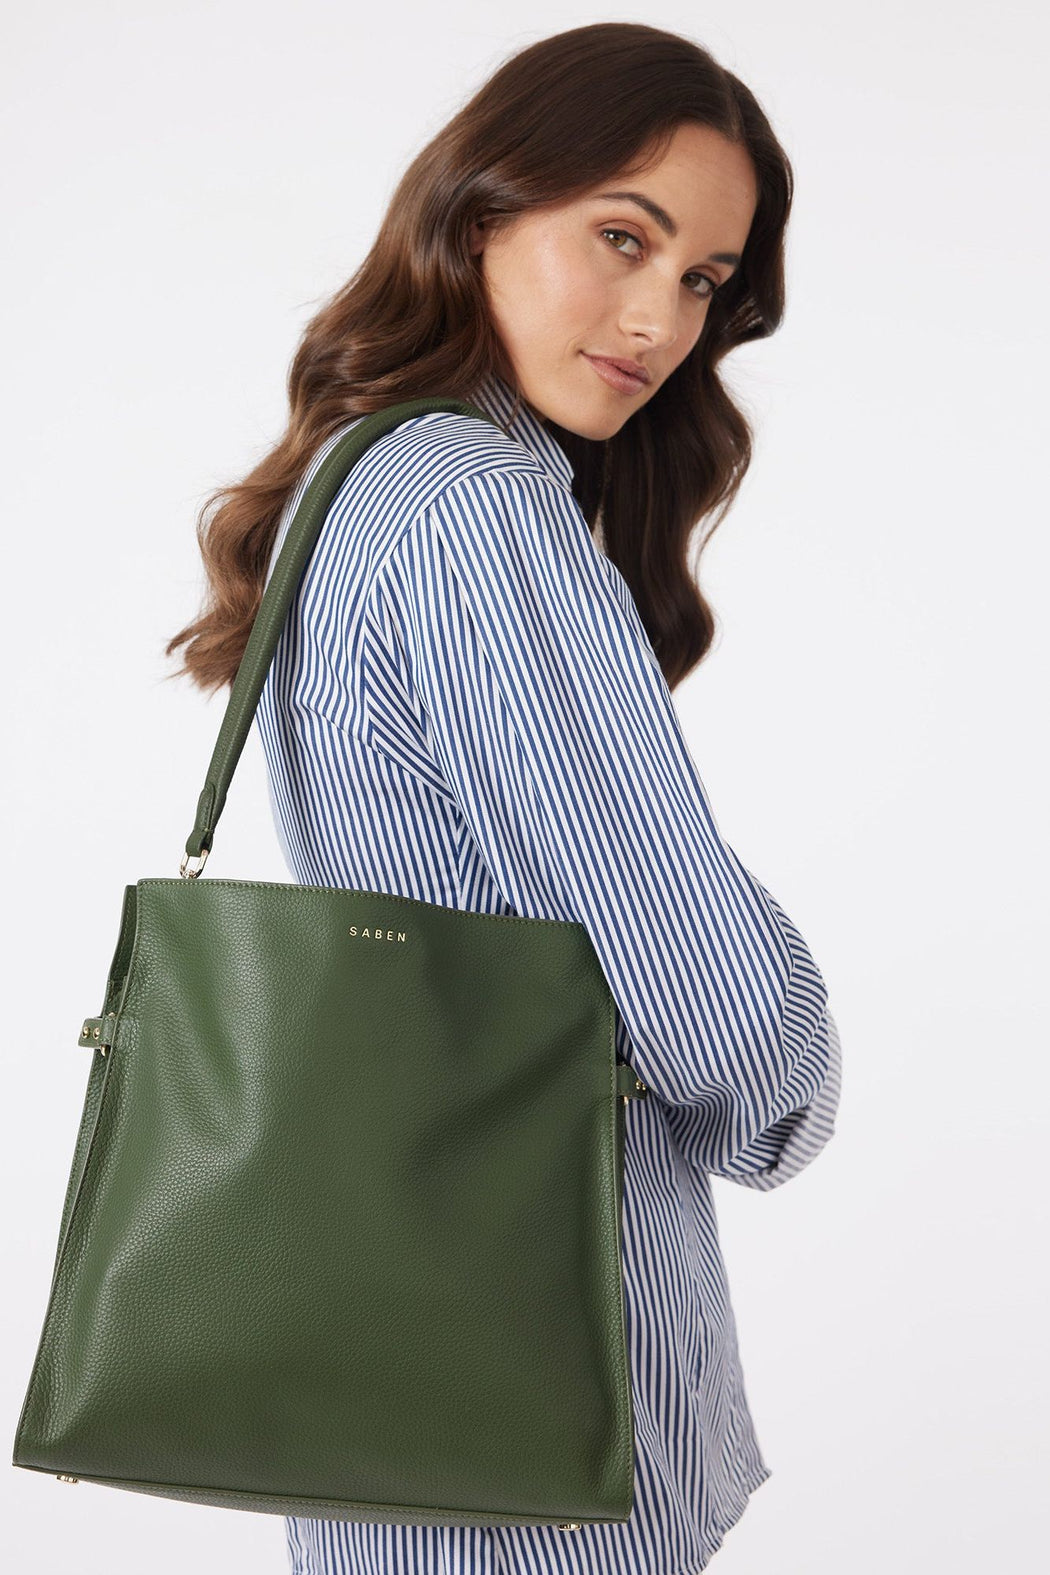 Beatrice Shoulder Bag - Evergreen